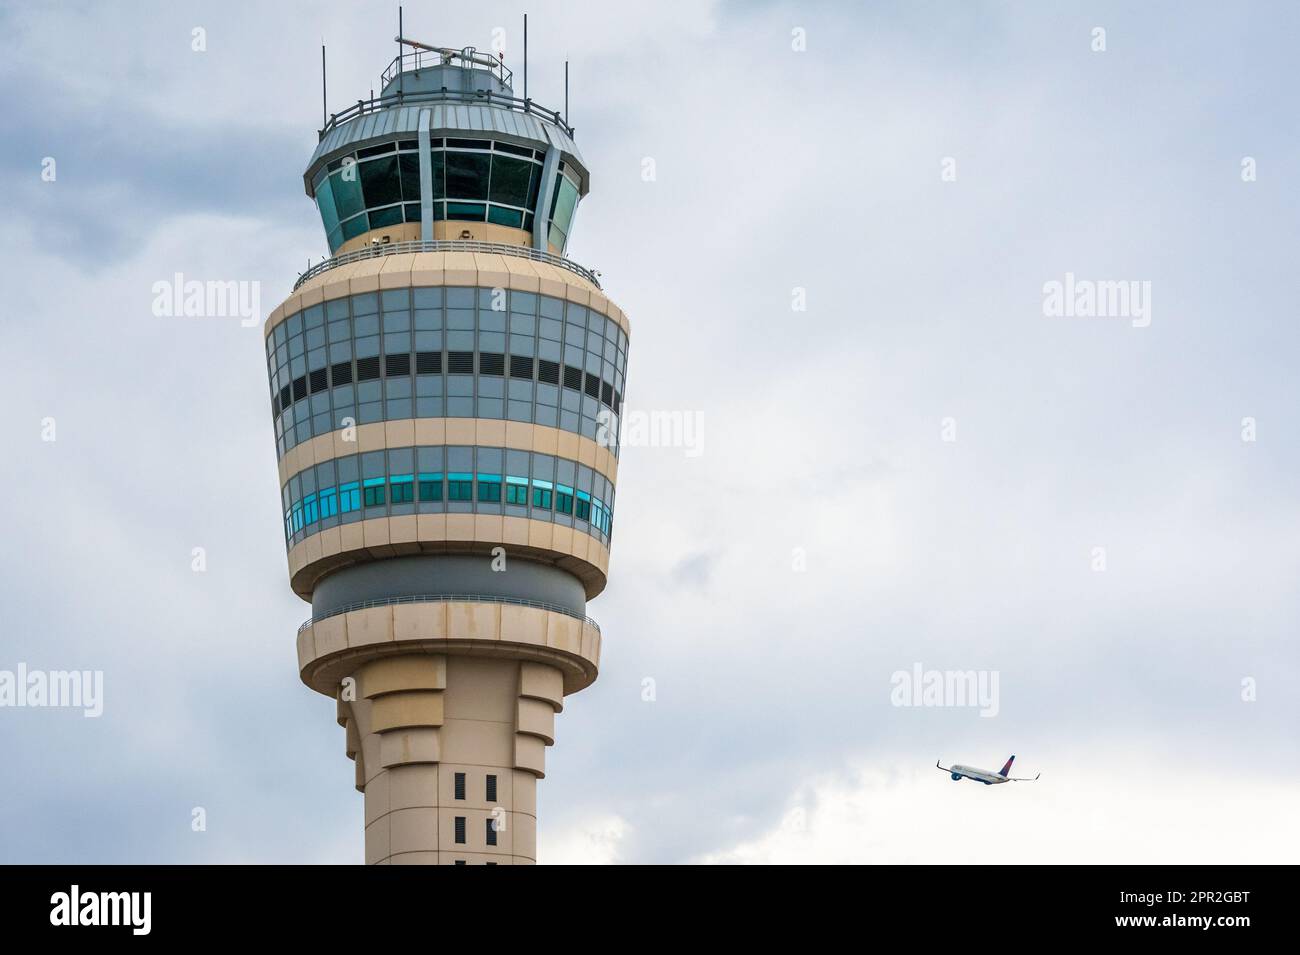 Le jet de Delta Air Lines monte dans les nuages au-delà de la tour de contrôle de la circulation aérienne à l'aéroport international Hartsfield-Jackson d'Atlanta, en Géorgie. Banque D'Images